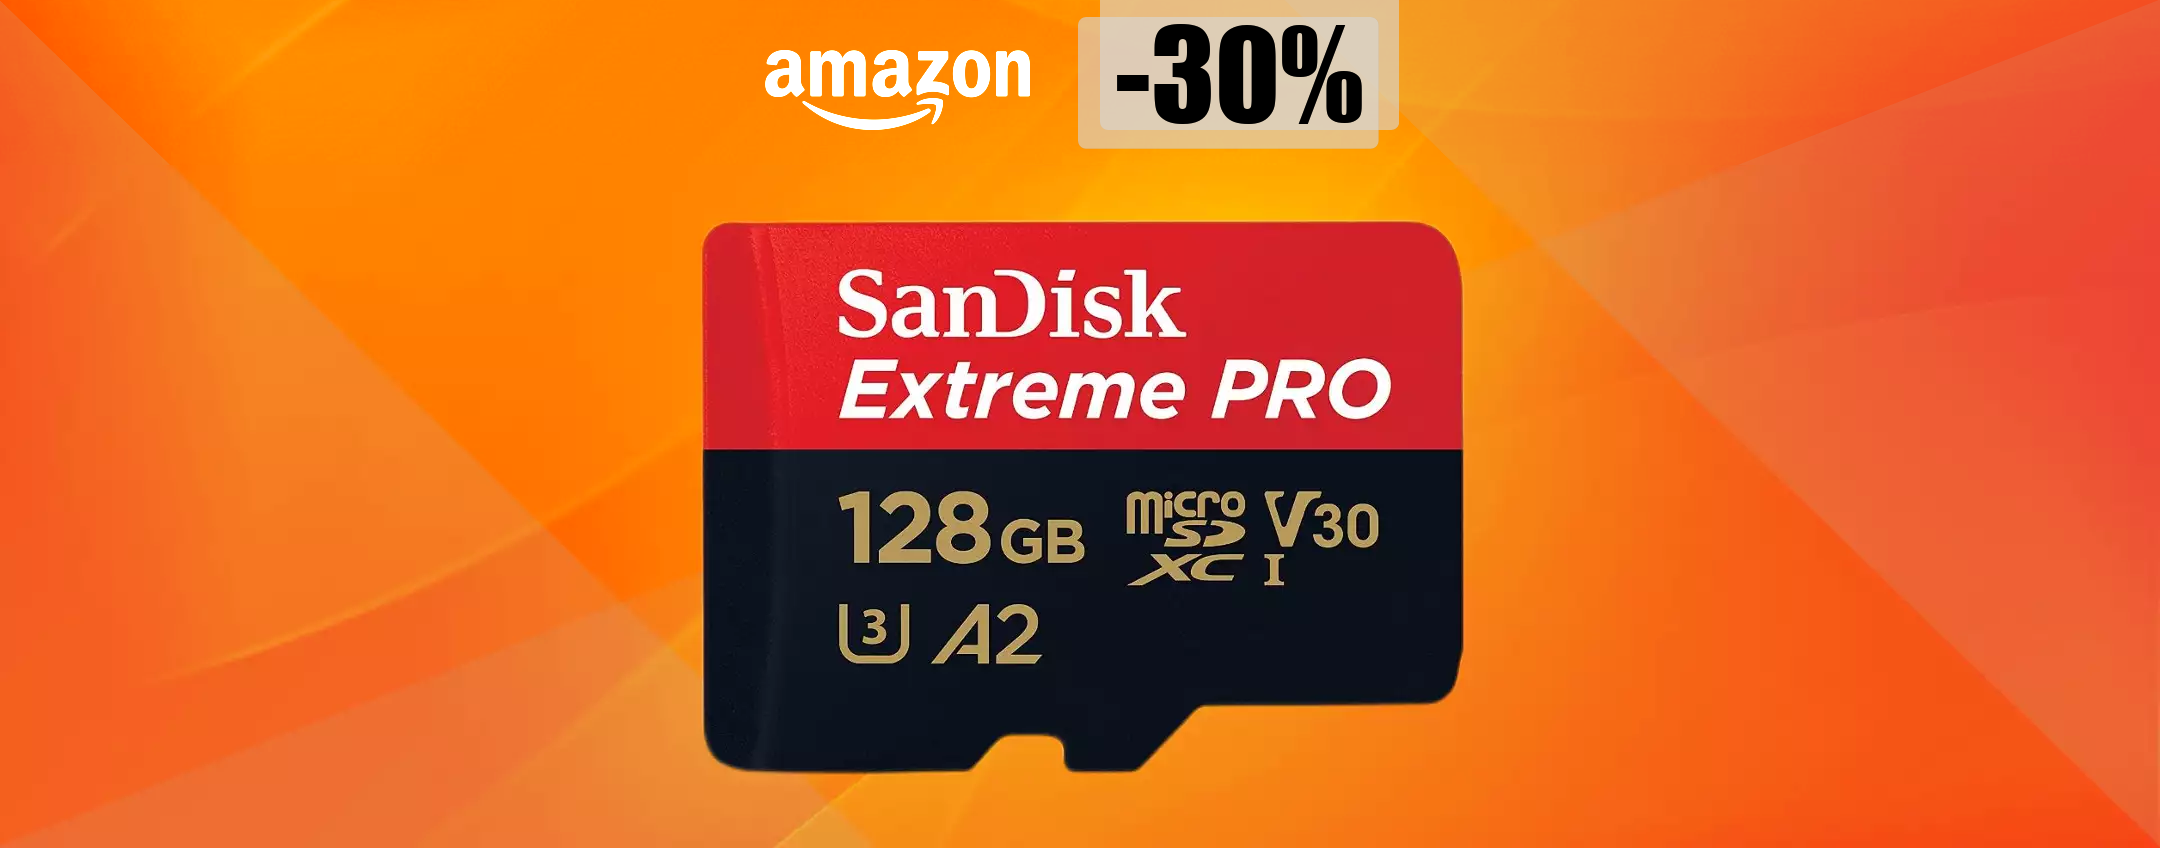 MicroSD SanDisk 128GB, performance e velocità ESTREME: bastano 35€